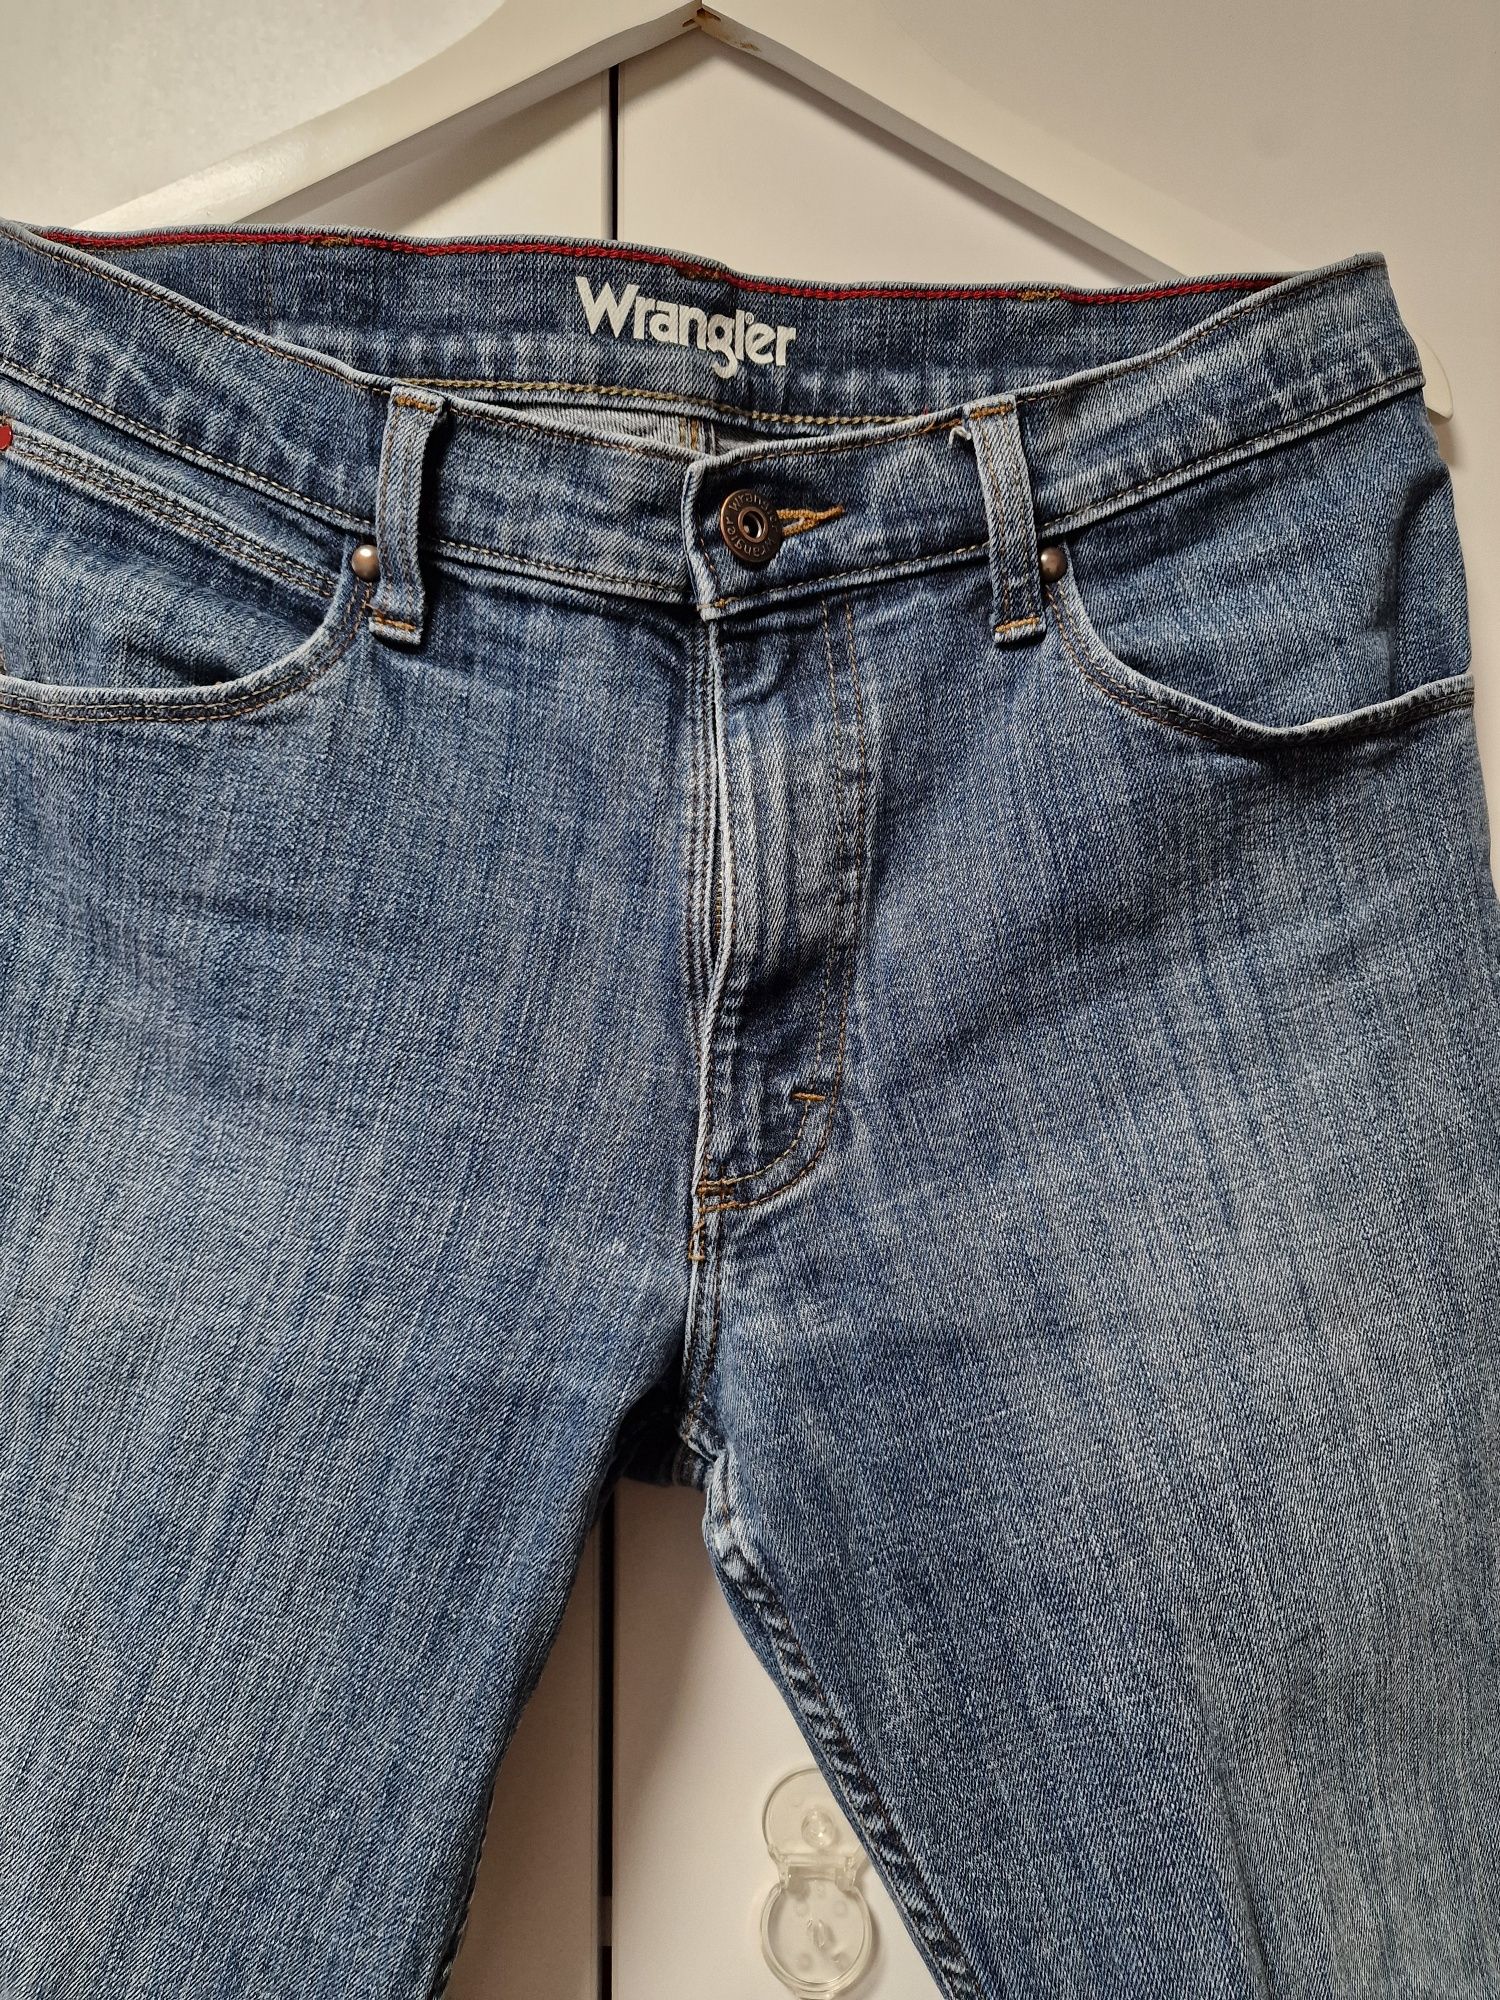 Продам джинси Wrangler. Розмір 32/32.